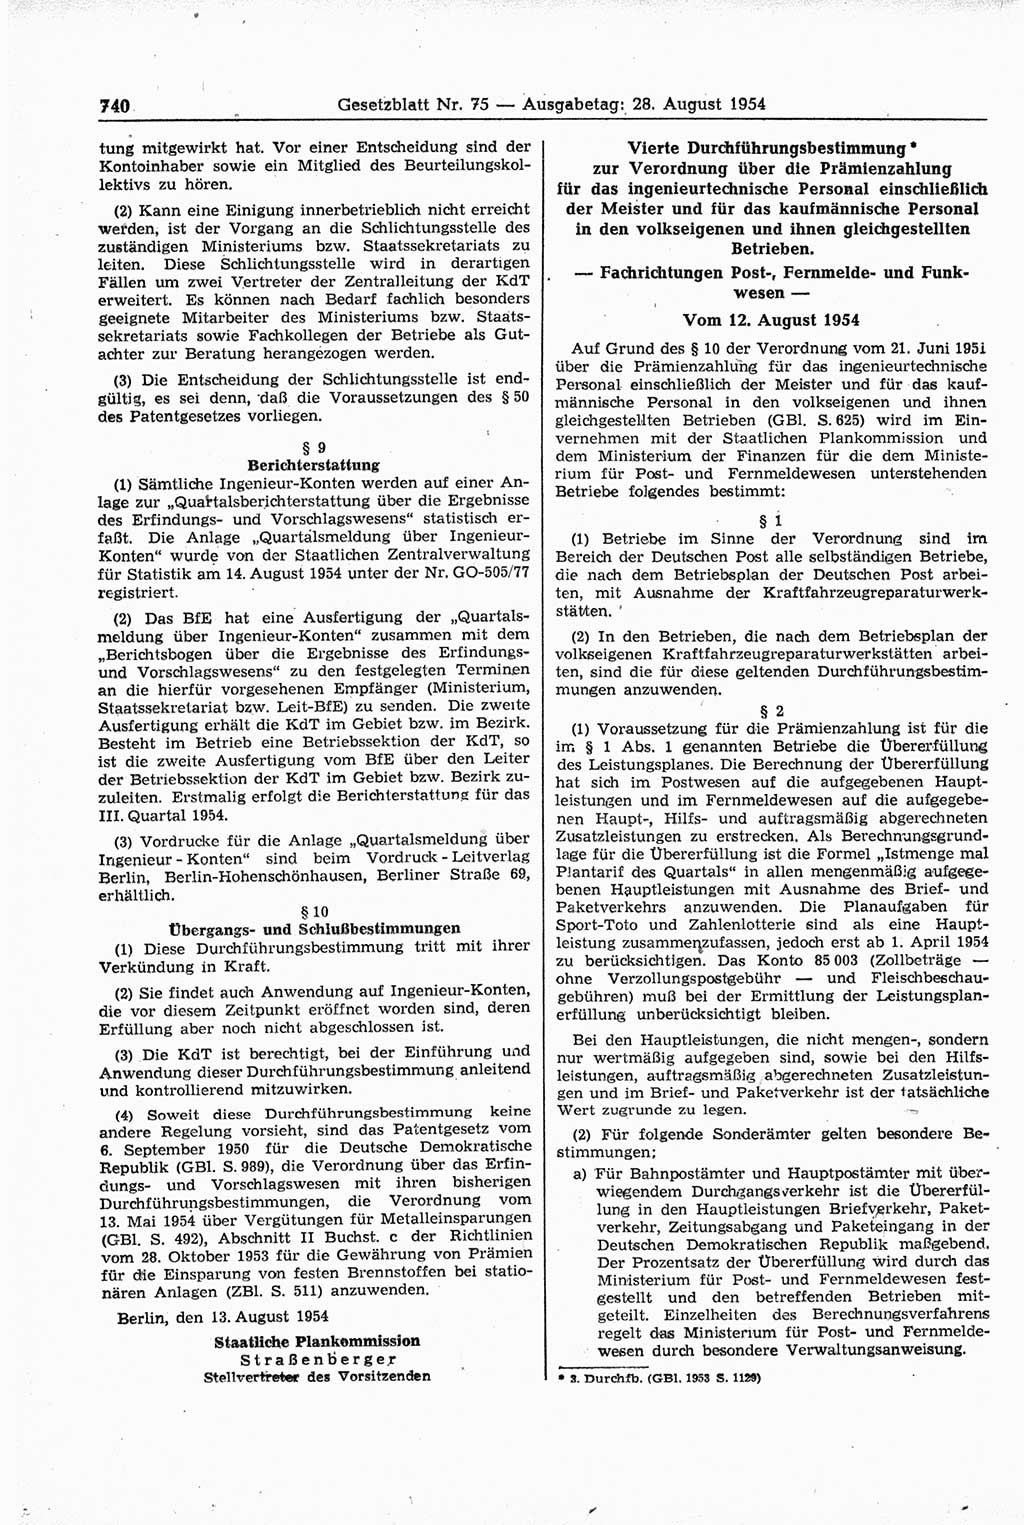 Gesetzblatt (GBl.) der Deutschen Demokratischen Republik (DDR) 1954, Seite 740 (GBl. DDR 1954, S. 740)